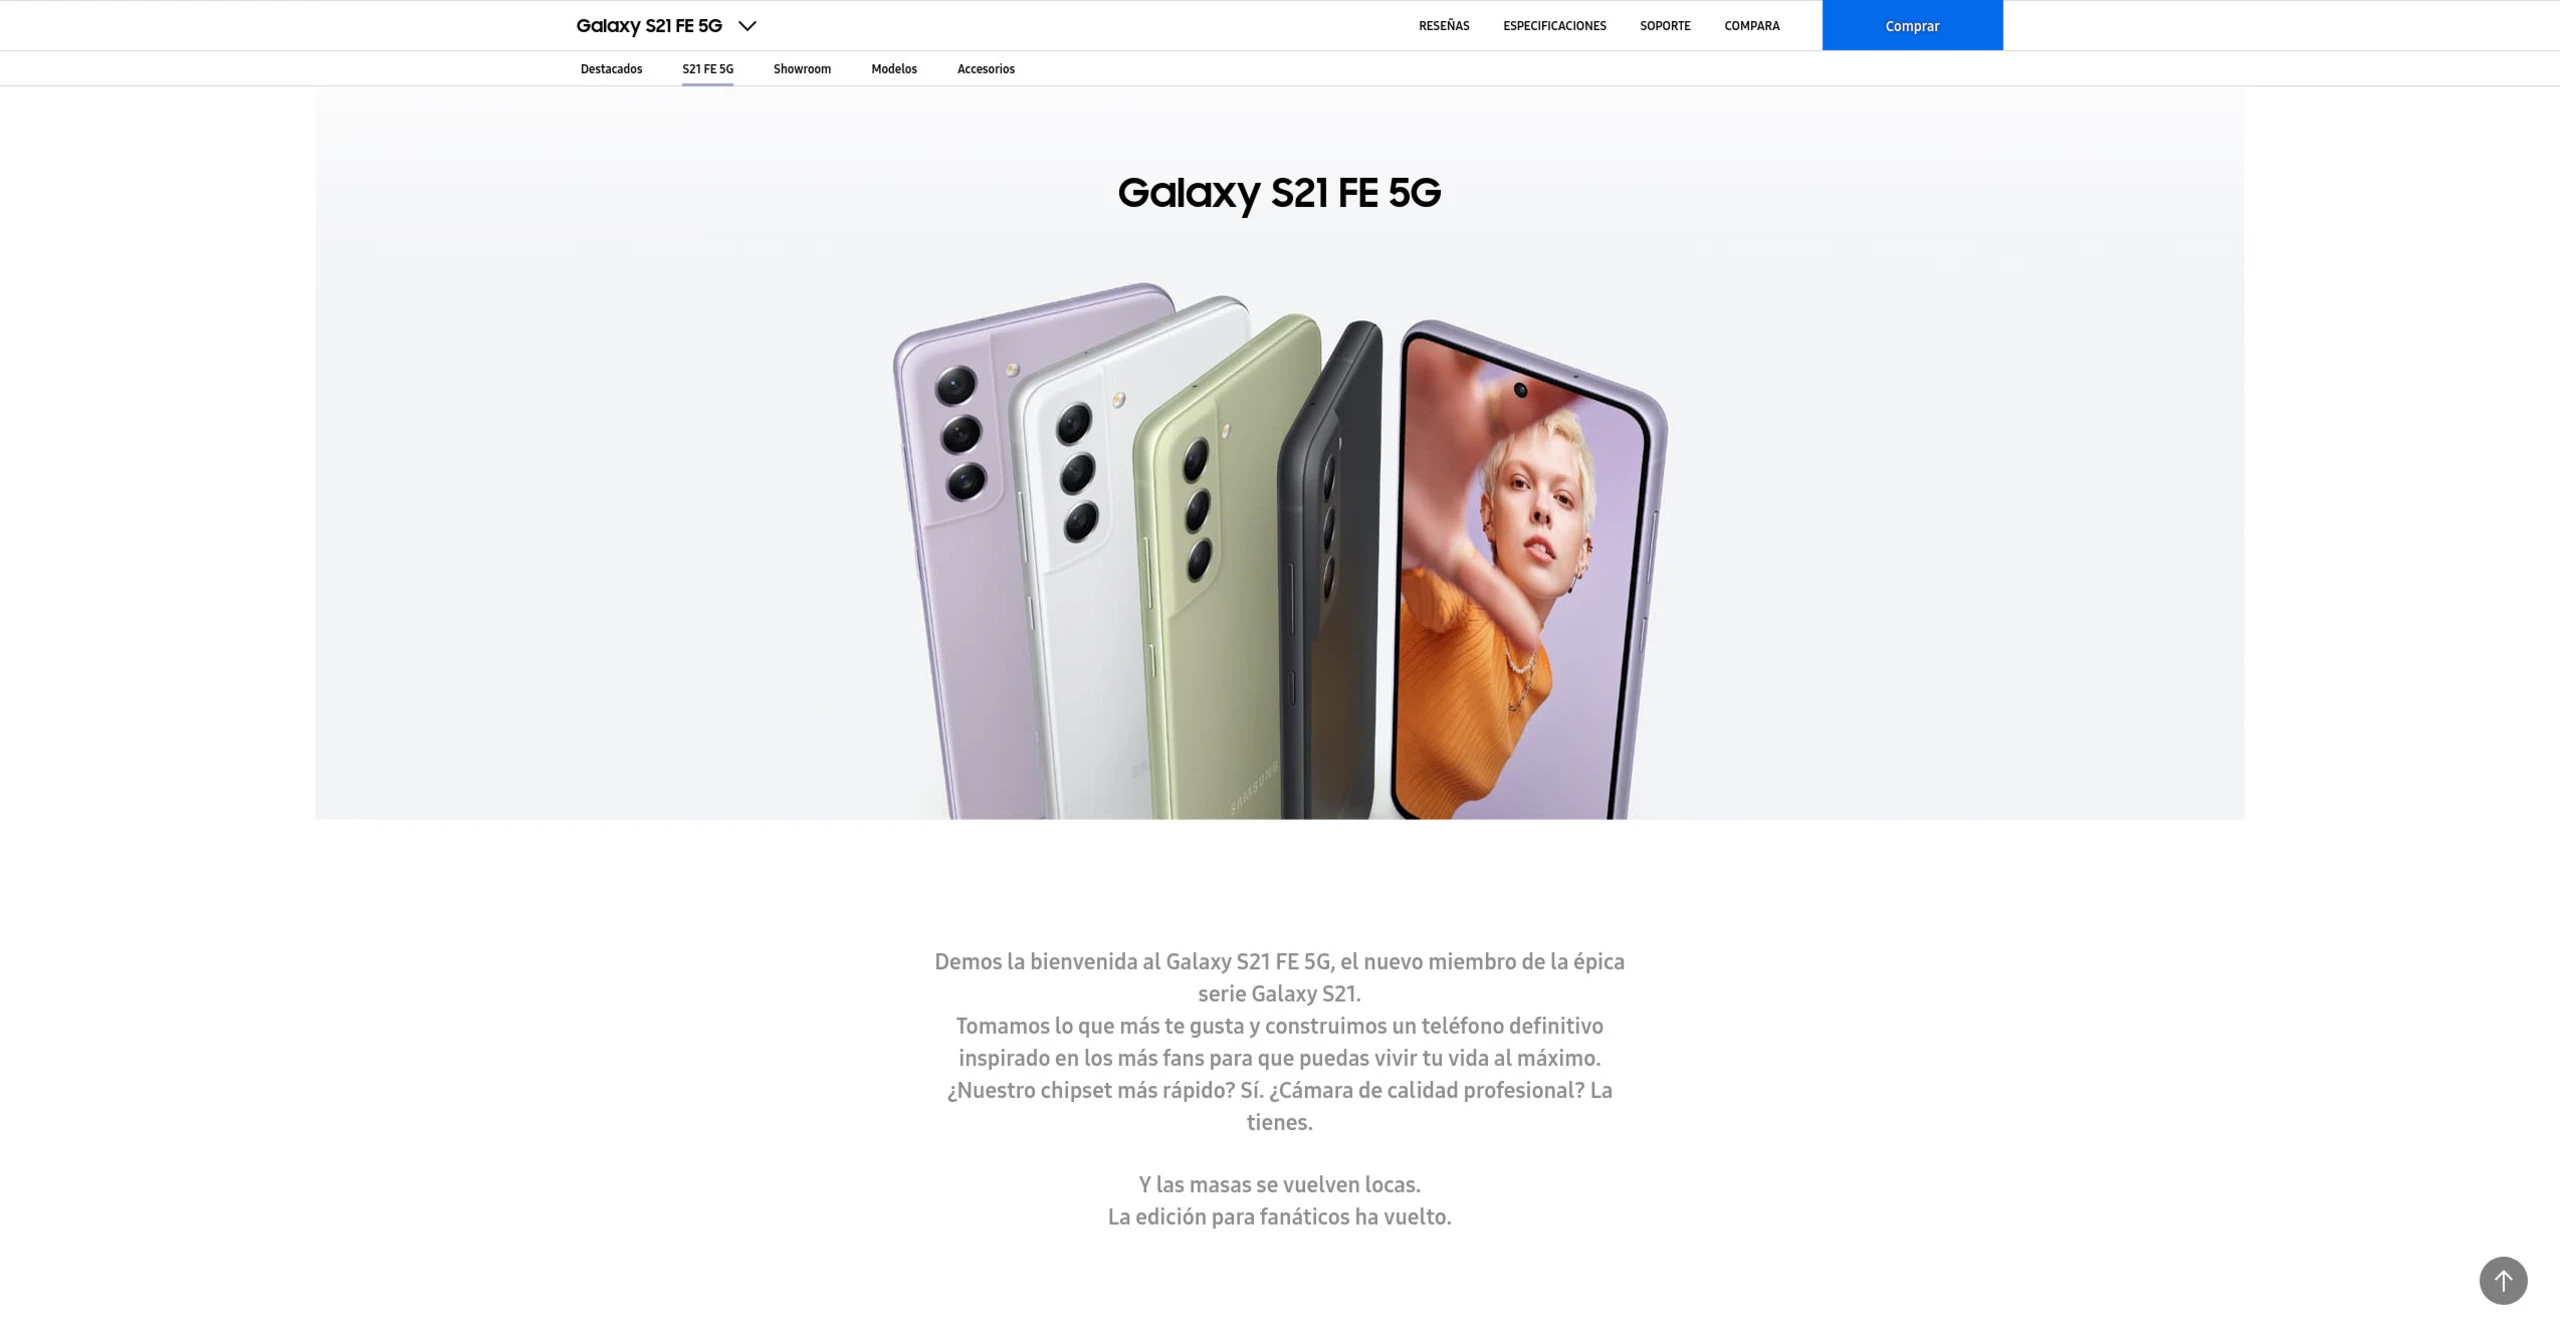 Samsung Galaxy S21 FE, análisis y opinión